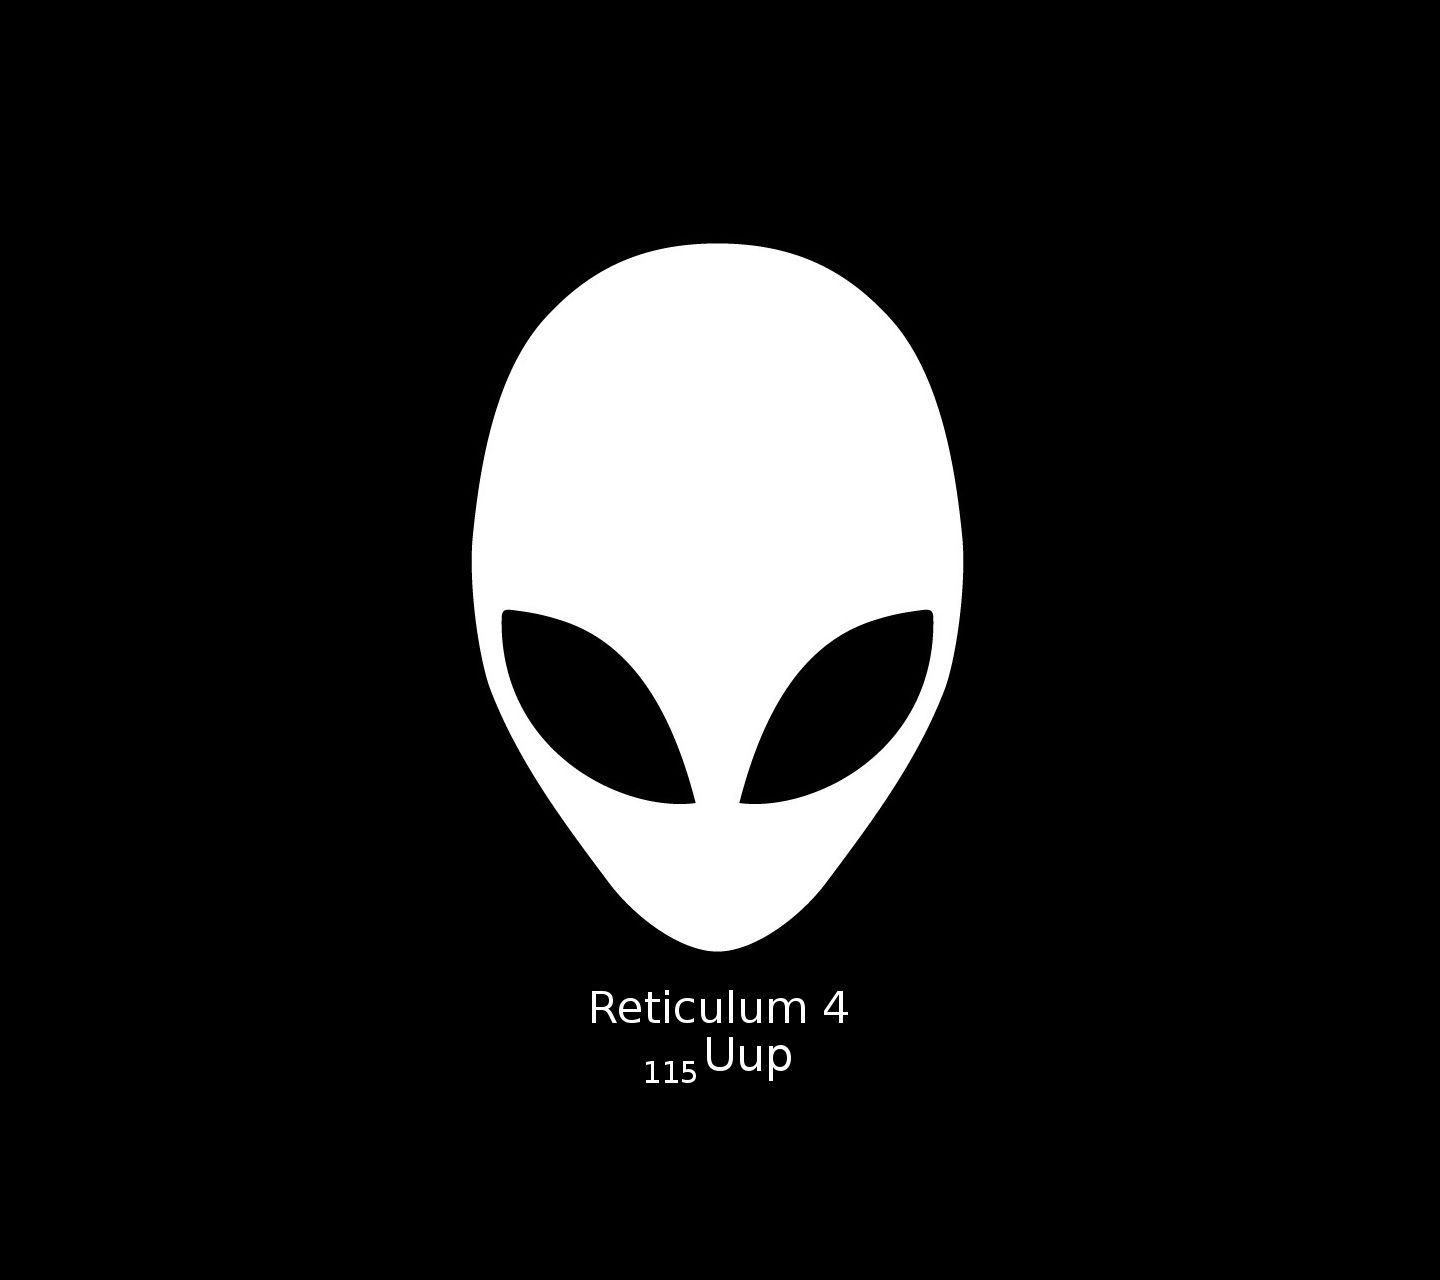 Black and White Alien Logo - Download Alien Black White 1440 x 1280 Wallpapers - 3177818 - alien ...